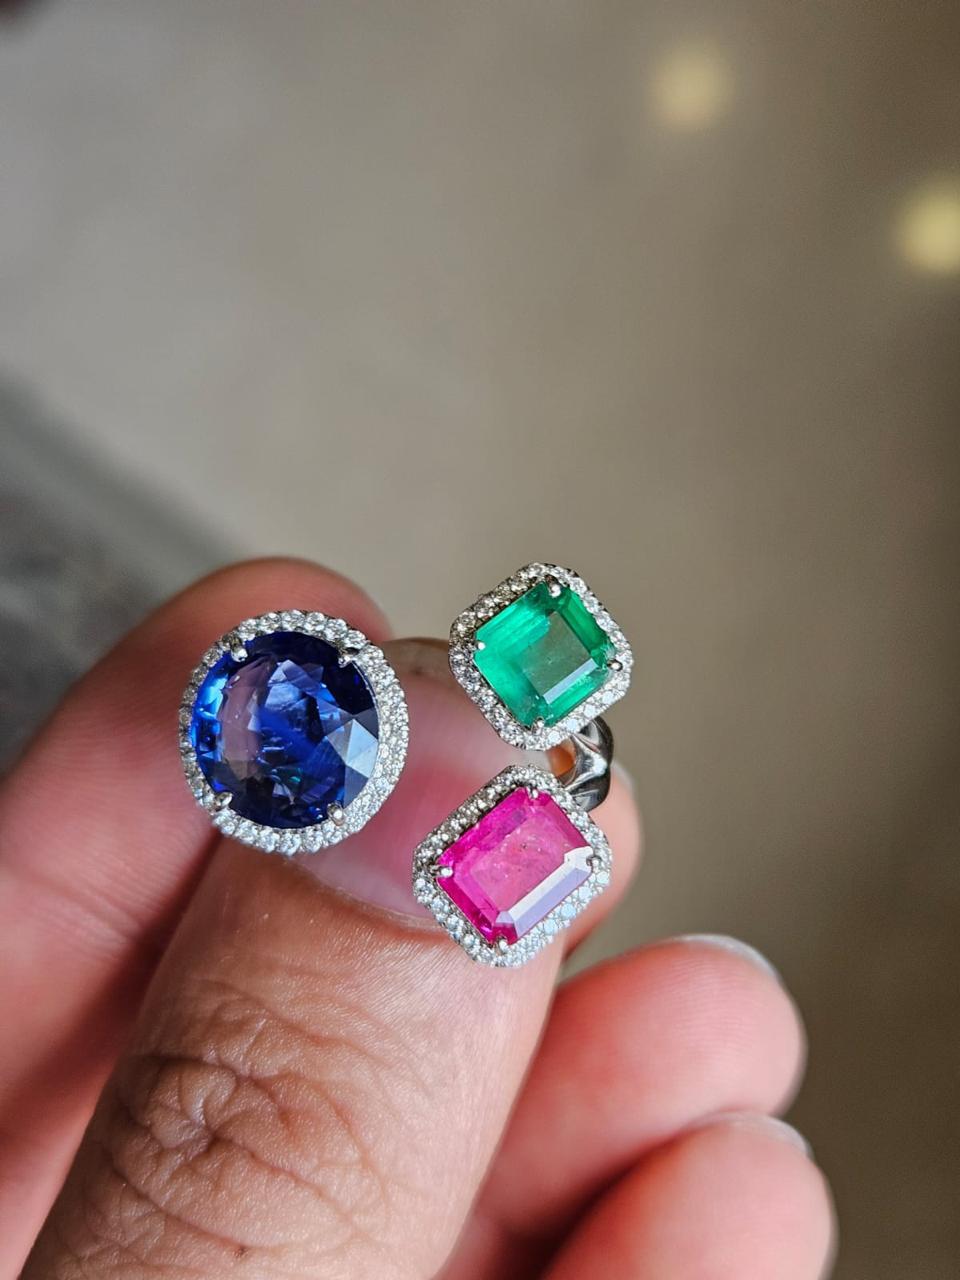 Eine sehr herrliche und schöne, ein von einer Art, Smaragd, Rubin & Blauer Saphir Drei Stein / Cocktail-Ring in 18K Weißgold & Diamanten gesetzt. Das Gewicht des runden blauen Saphirs beträgt 3,71 Karat. Der Blaue Saphir stammt aus Ceylon (Sri